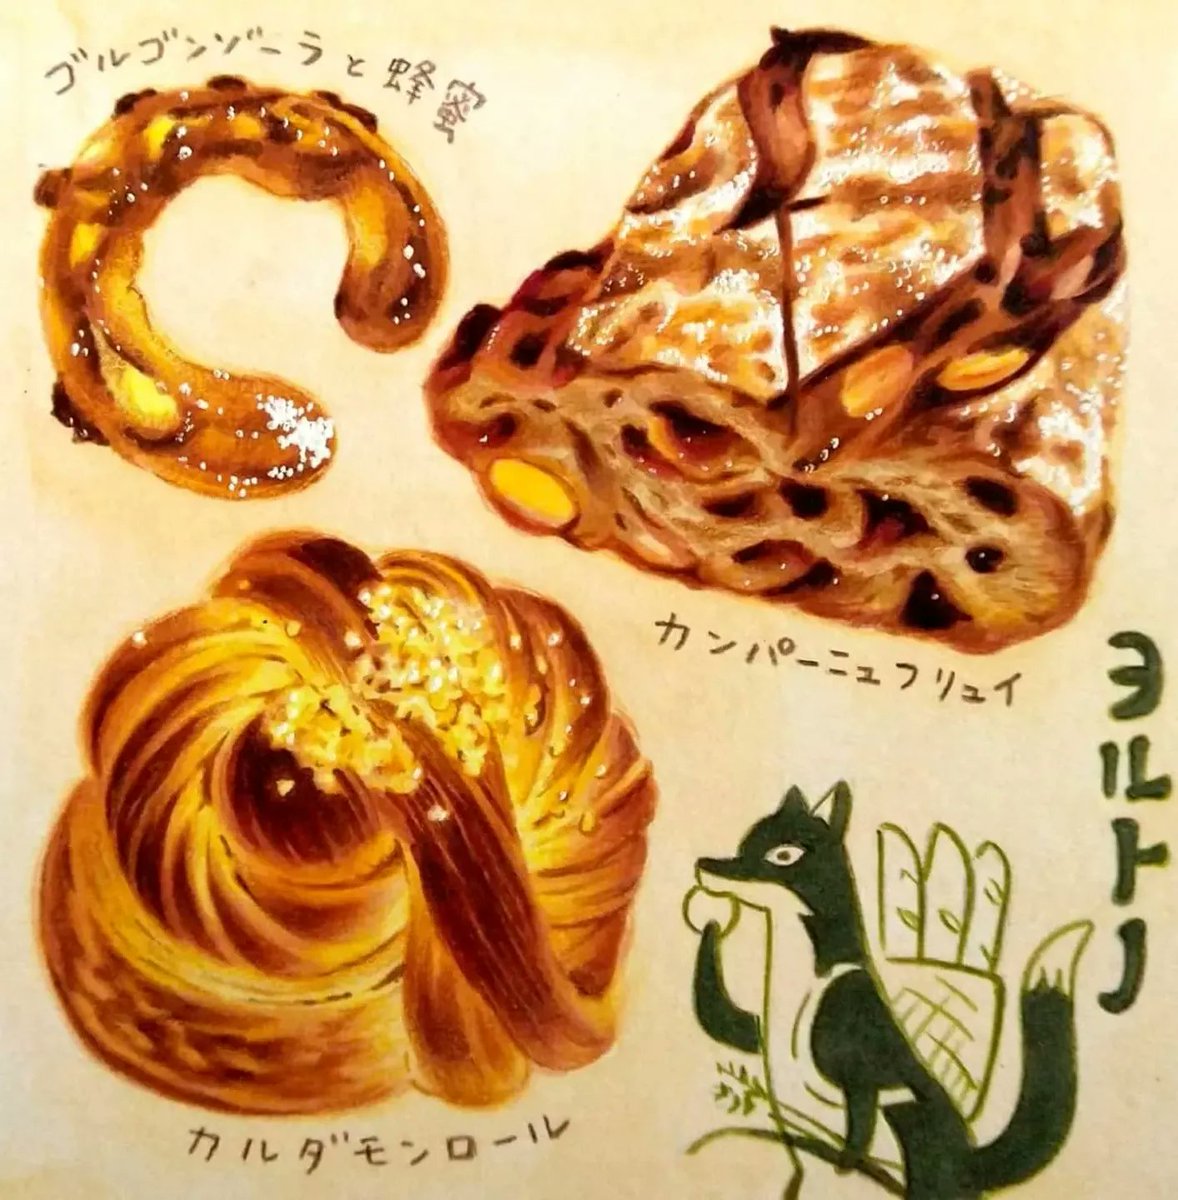 4月12日の今日は日本のパンの発祥の日 #パンの記念日 。香り高く味わい深いパンが評判の「パン ヨルトノ」さん。「カルダモンロール」はカルダモンと発酵バターが香り、ほんのり甘いパン。珈琲と合います。現在は小樽市張碓町で営業されています。(朝日新聞道内版2021年5月掲載)
#田島ハルのくいしん簿 